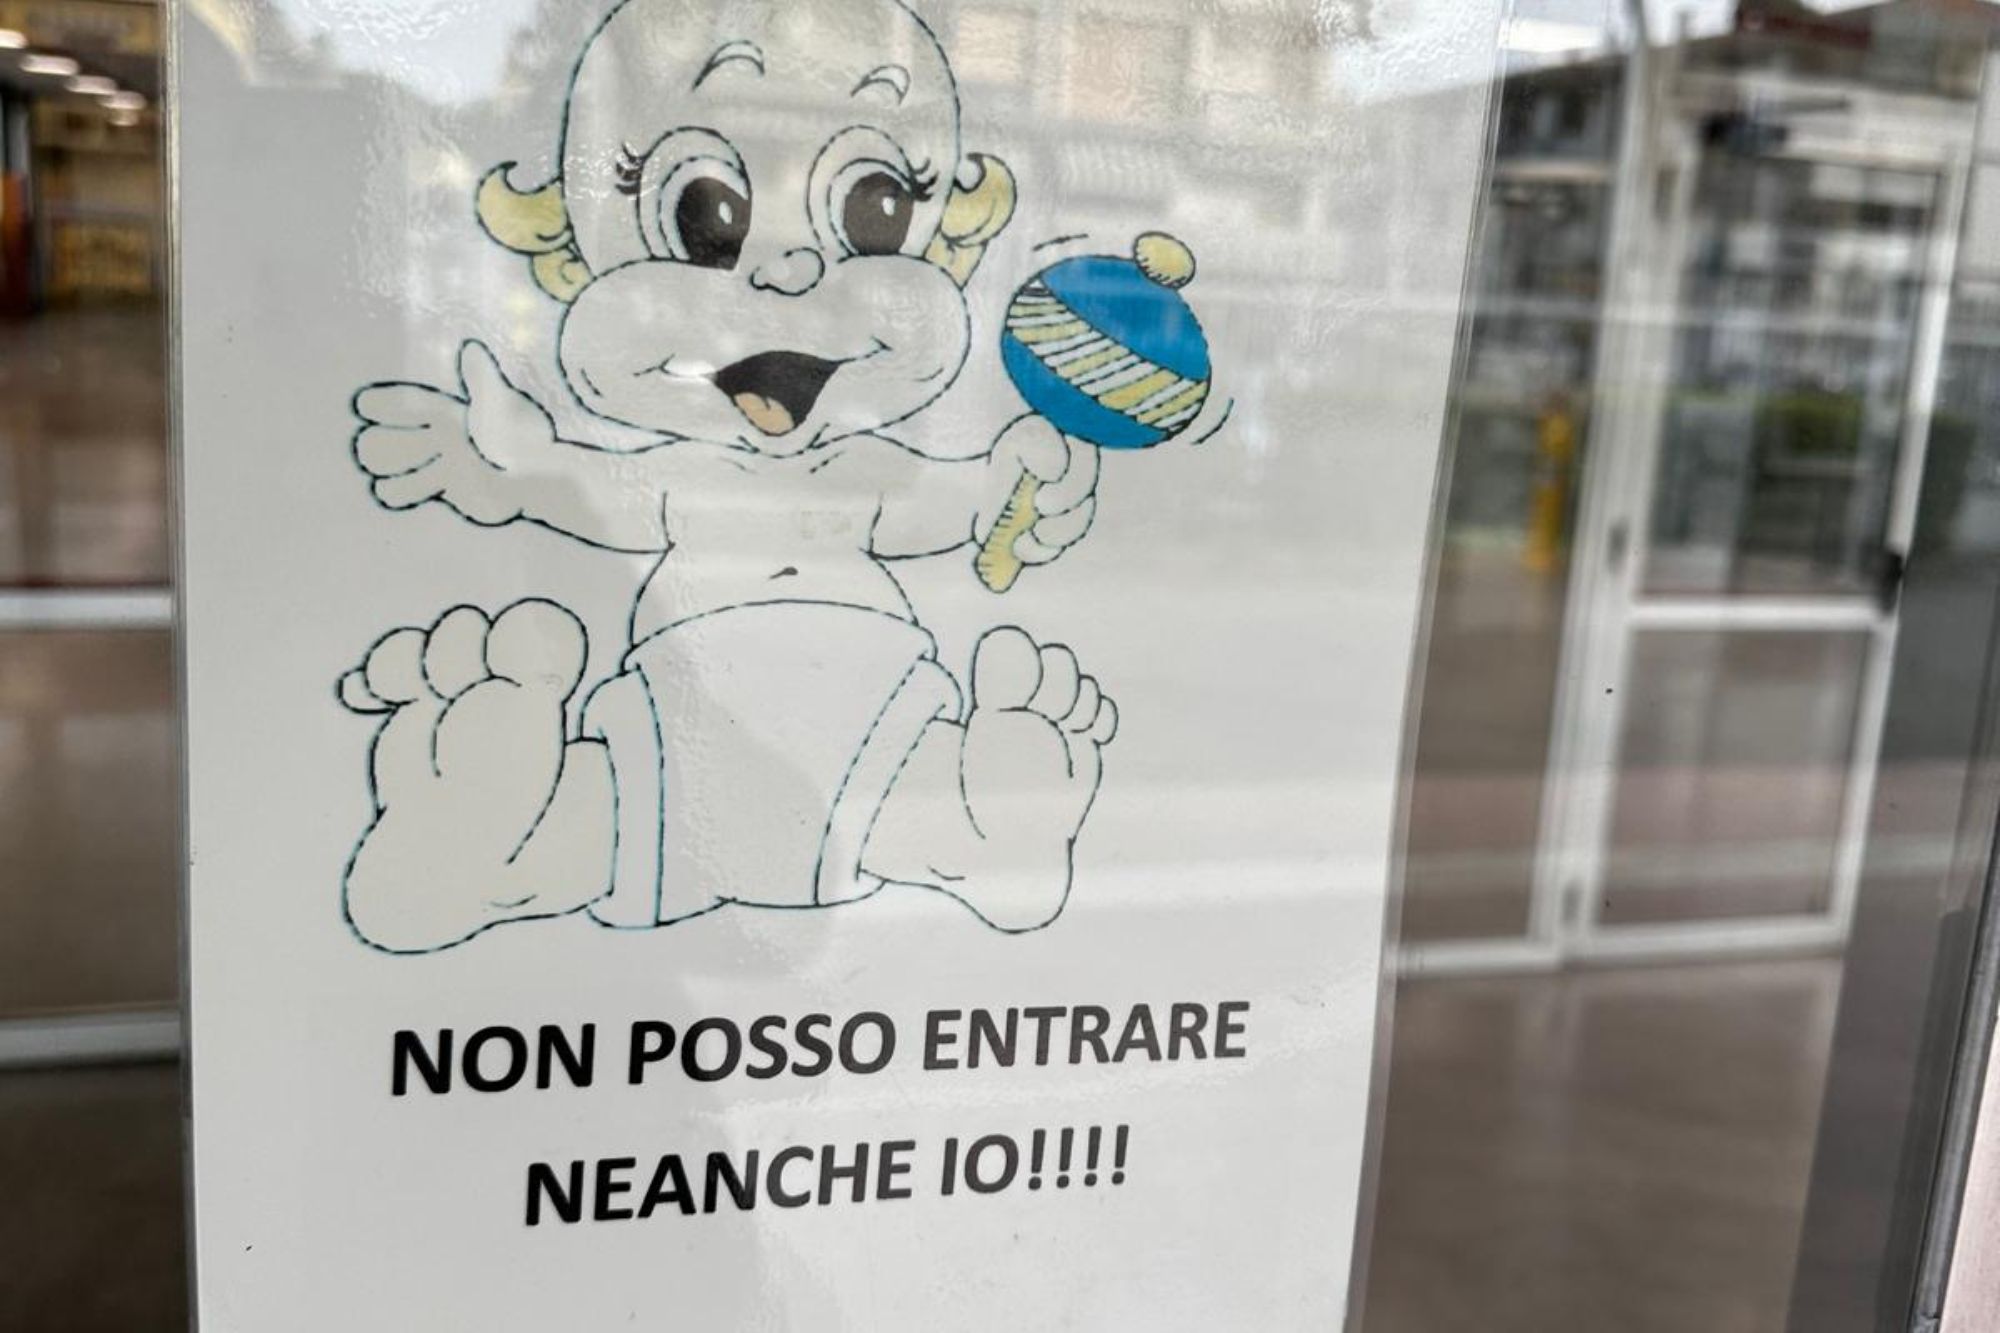 Vietato accesso ai neonati in una scuola, il cartello: “Non posso entrare neanche io”